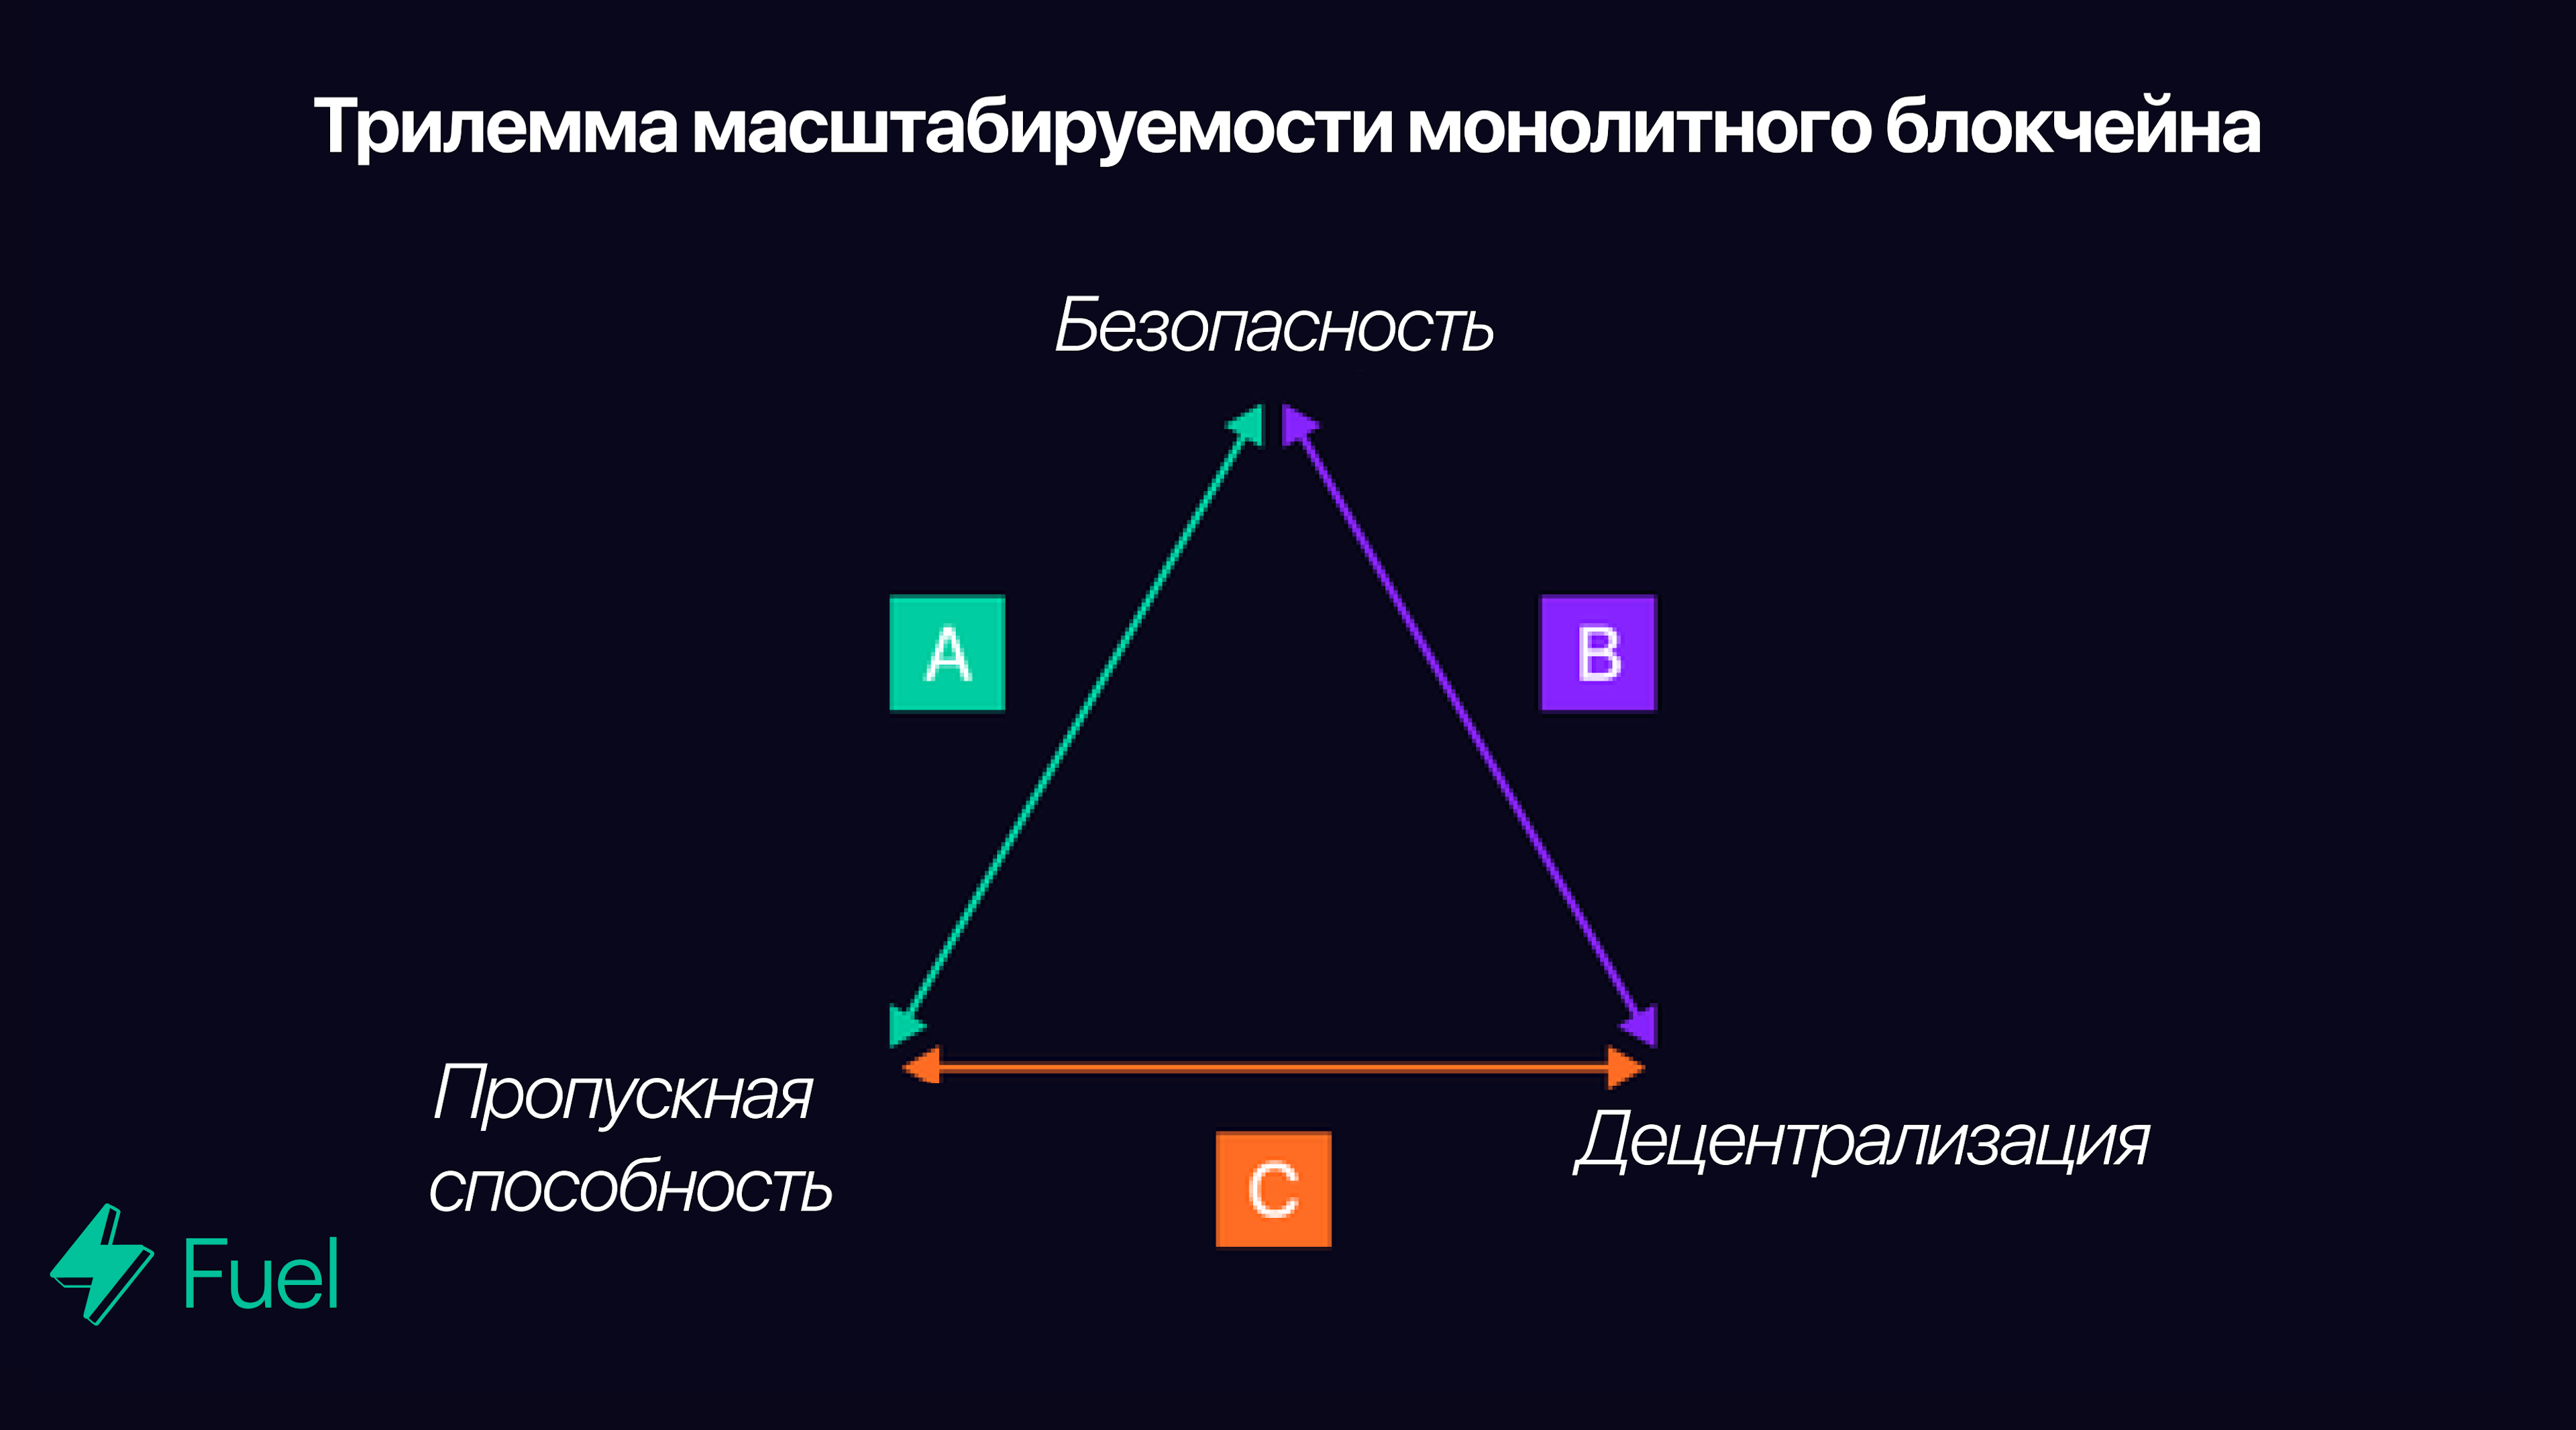 Большинство монолитных блокчейнов позиционируют себя в группе А, В или С, тем самым жертвуя одним из трех основных аспектов